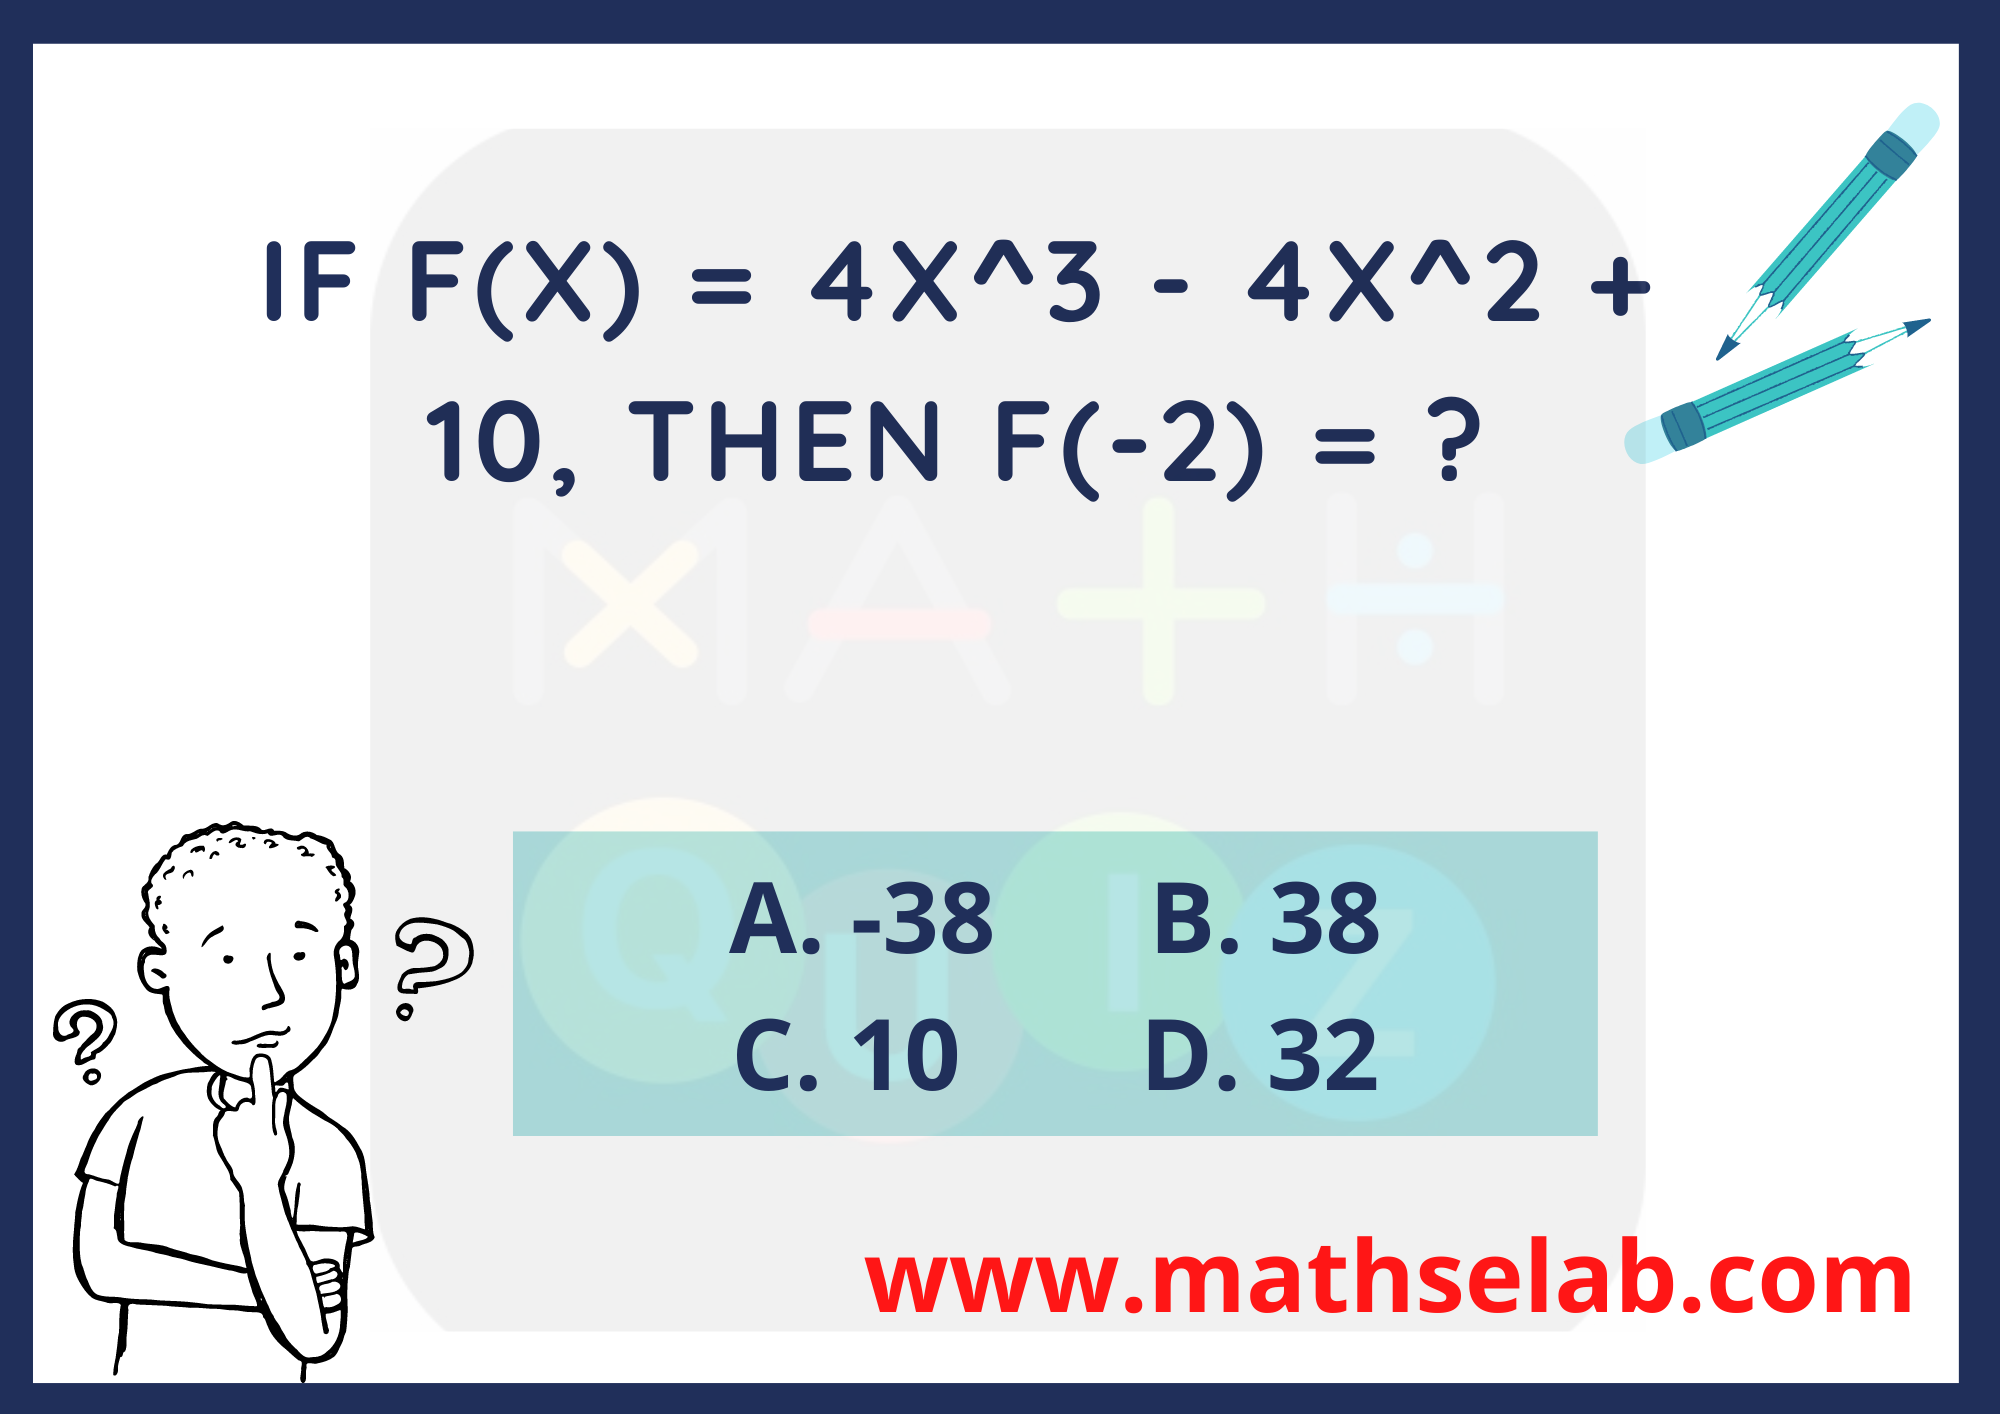 If f(x) = 4x^3 - 4x^2 + 10, then f(-2) = - www.mathselab.com